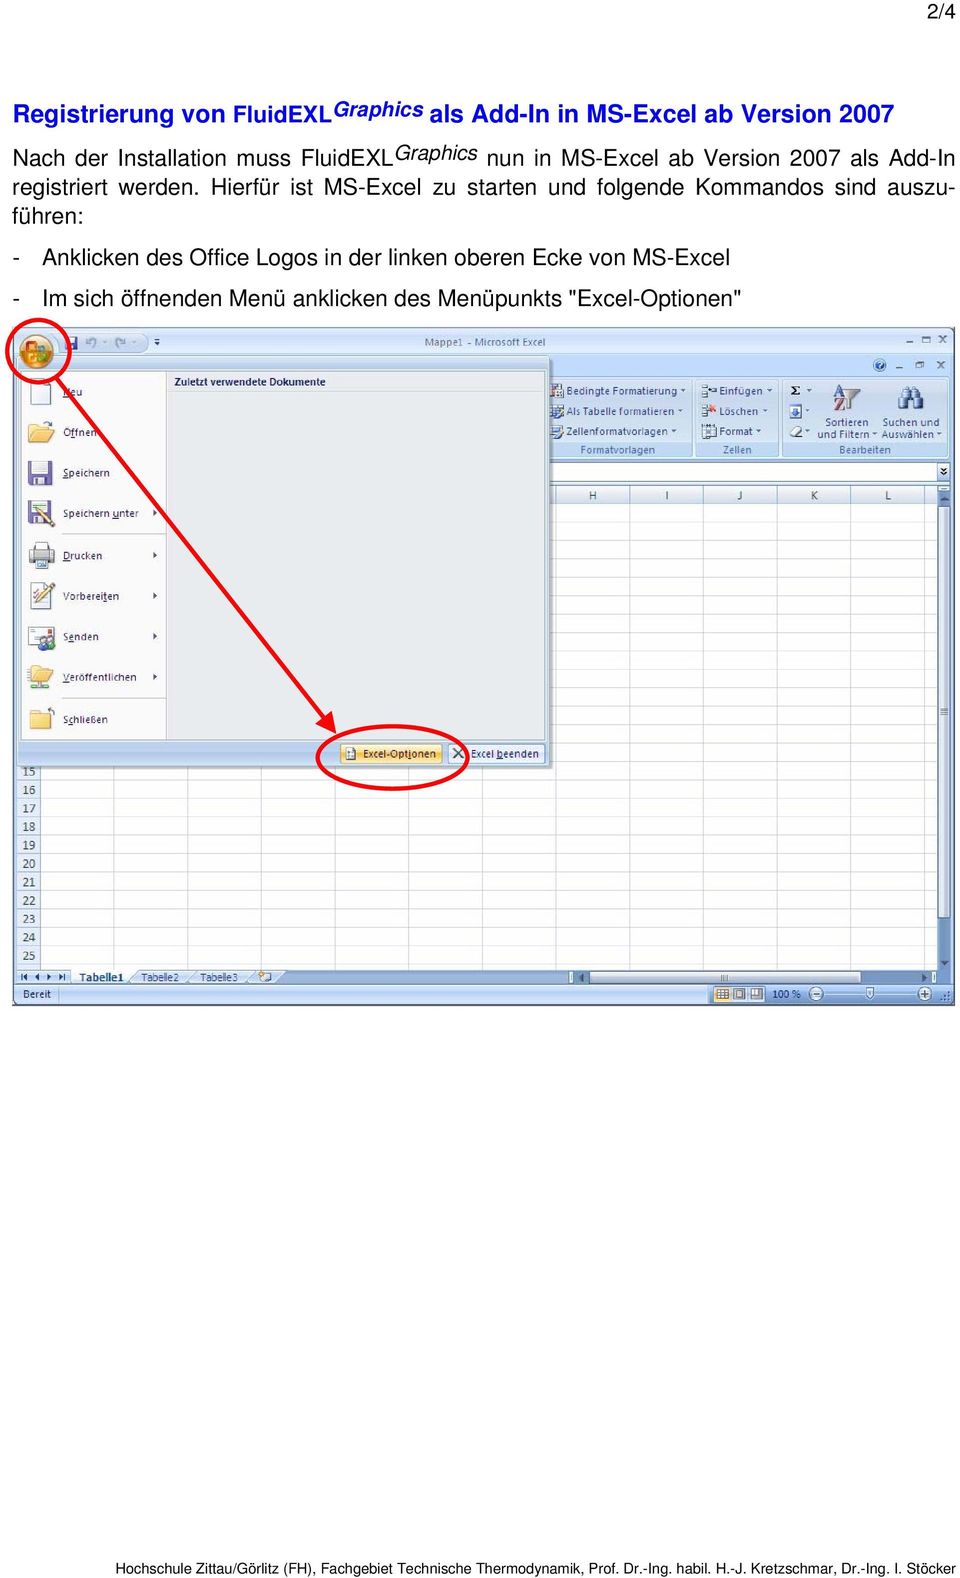 Hierfür ist MS-Excel zu starten und folgende Kommandos sind auszuführen: - Anklicken des Office